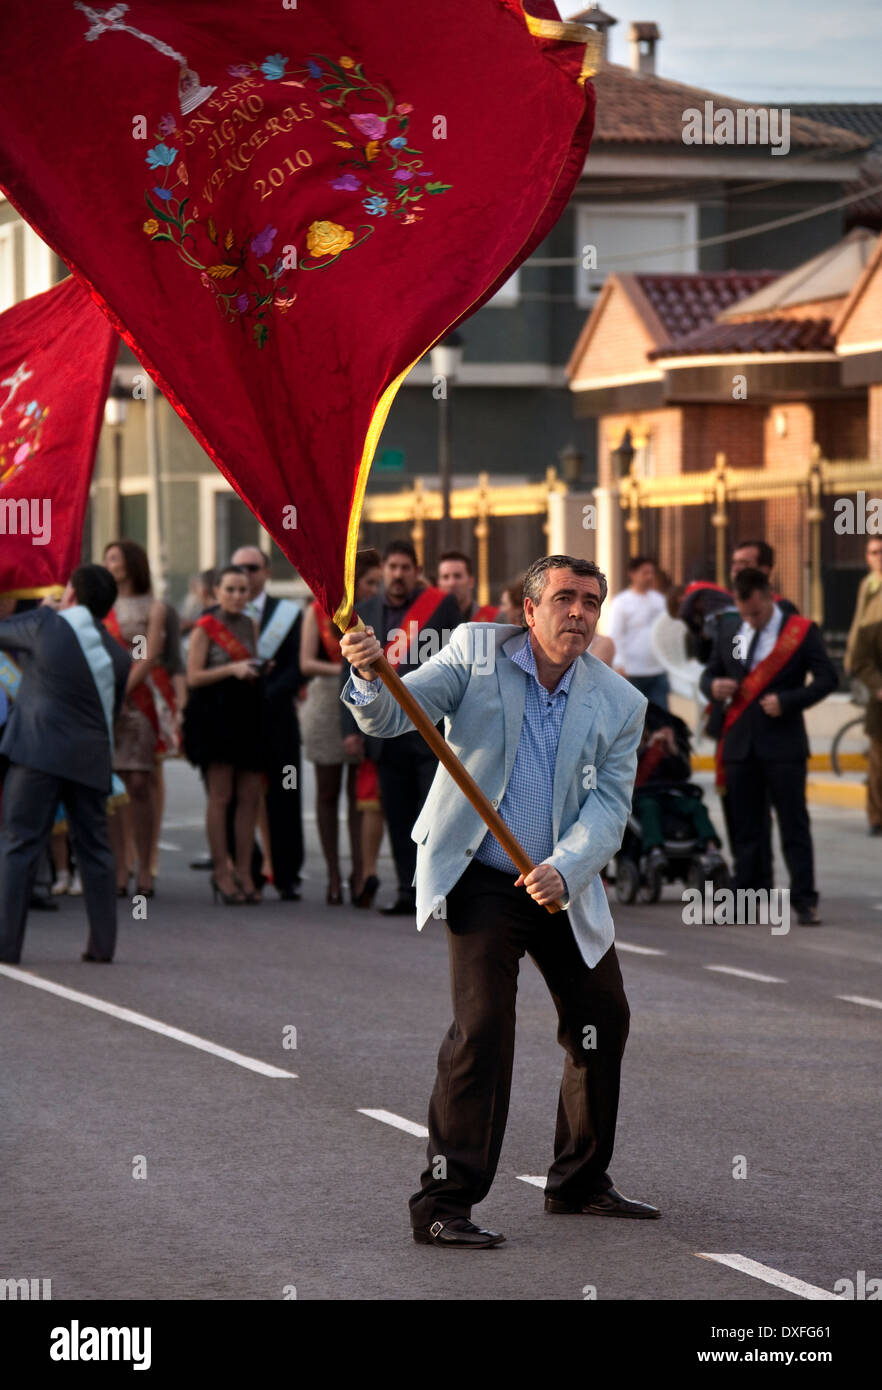 Flag waving local man at the Fiesta de la Santisima Cruz - Costa Del Sol region of spouthern Spain Stock Photo